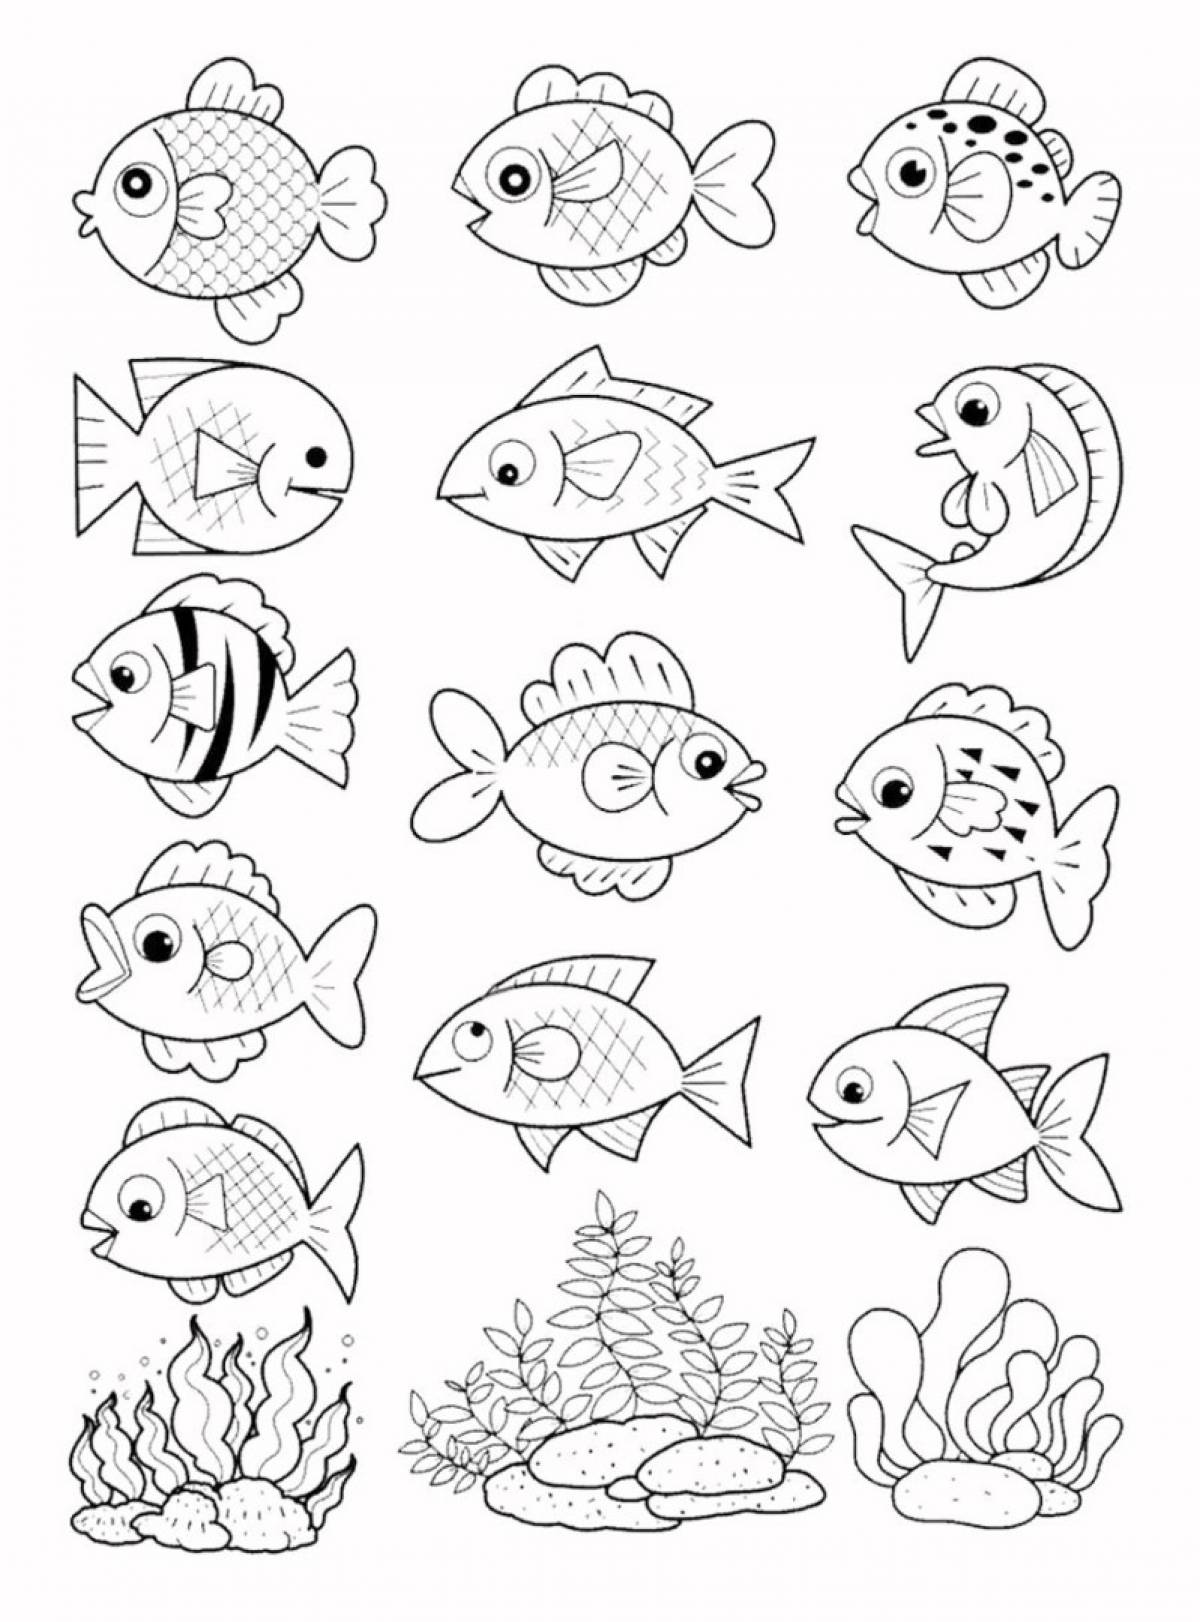 Много раскрасок на 1 листе. Раскраска рыбка. Рыба раскраска для детей. Рыбка раскраска для детей. Аквариумные рыбки раскраска.